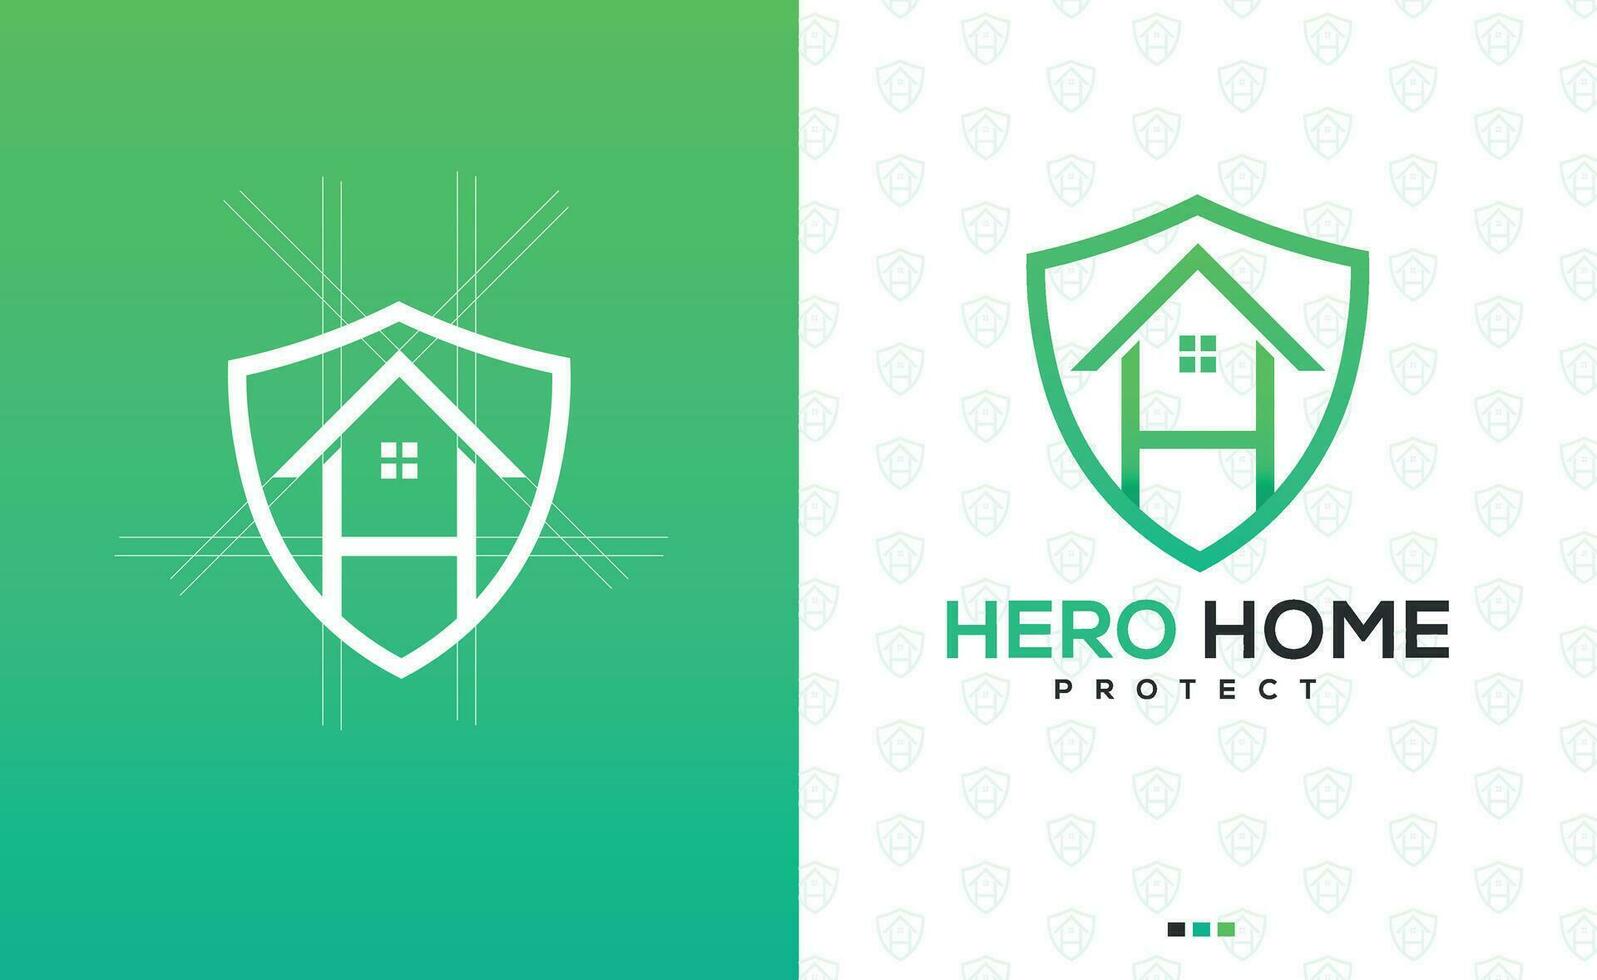 profesional moderno minimalista hogar logo diseño para real inmuebles negocio con letra h y proteccion signo. vector